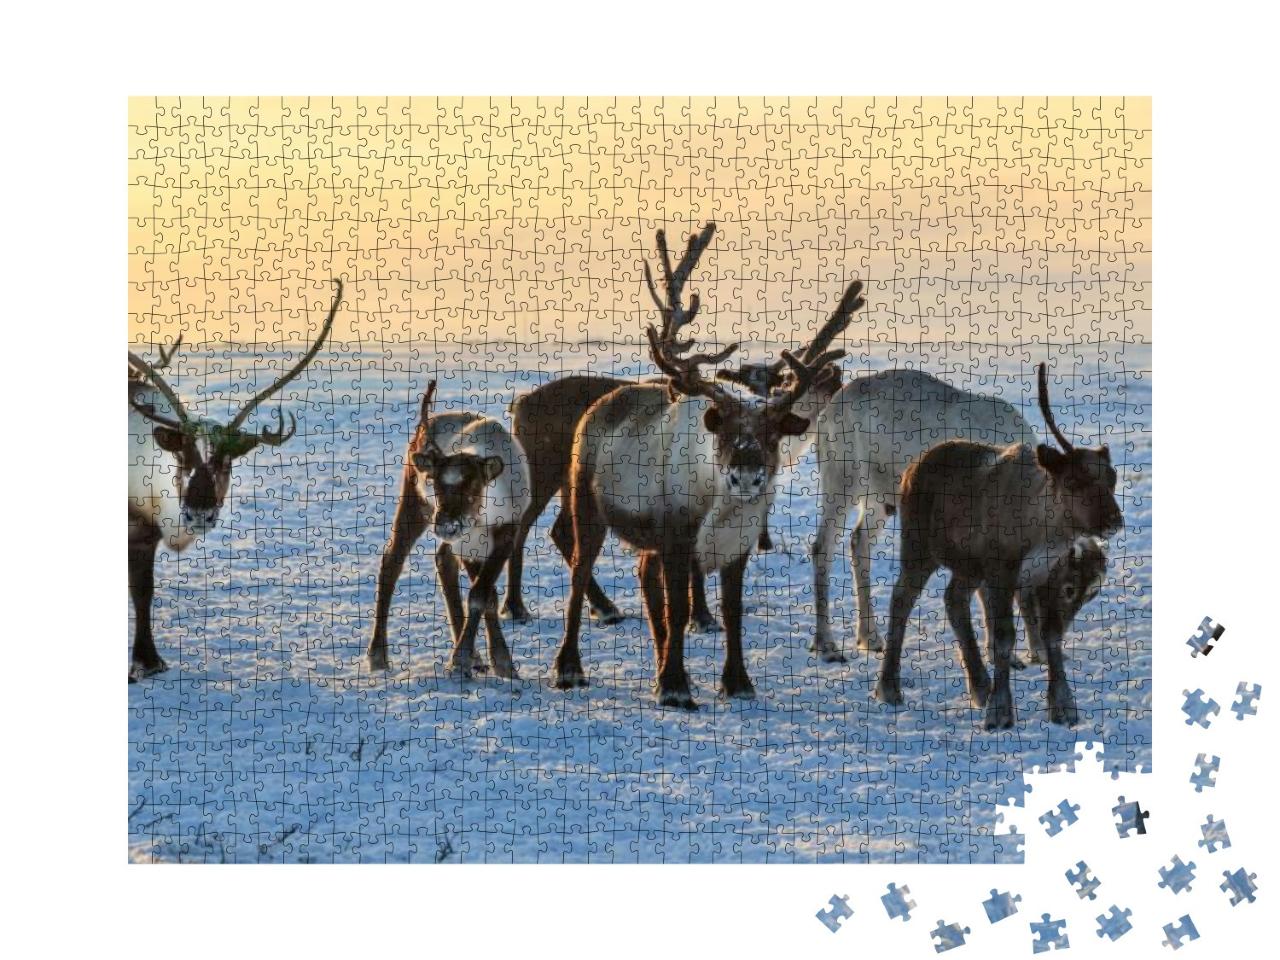 Herd of Reindeer in Winter Weather, Pasture Reindeer... Jigsaw Puzzle with 1000 pieces